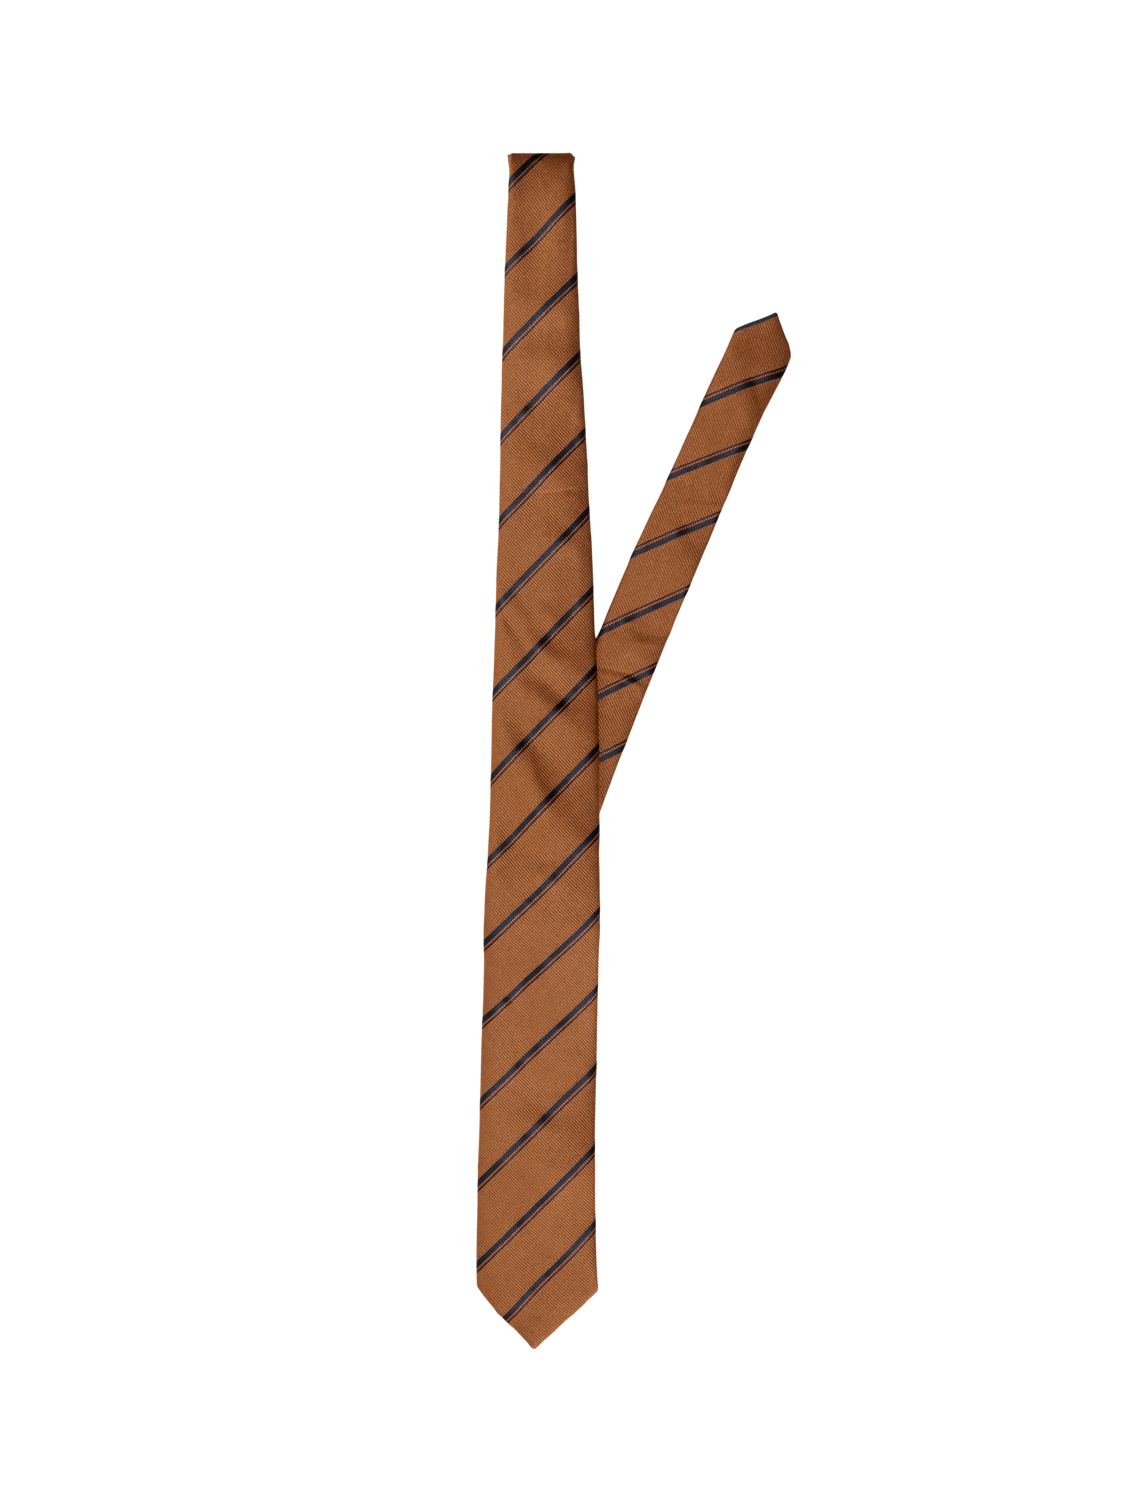 Lane Slips - Wood Thrush